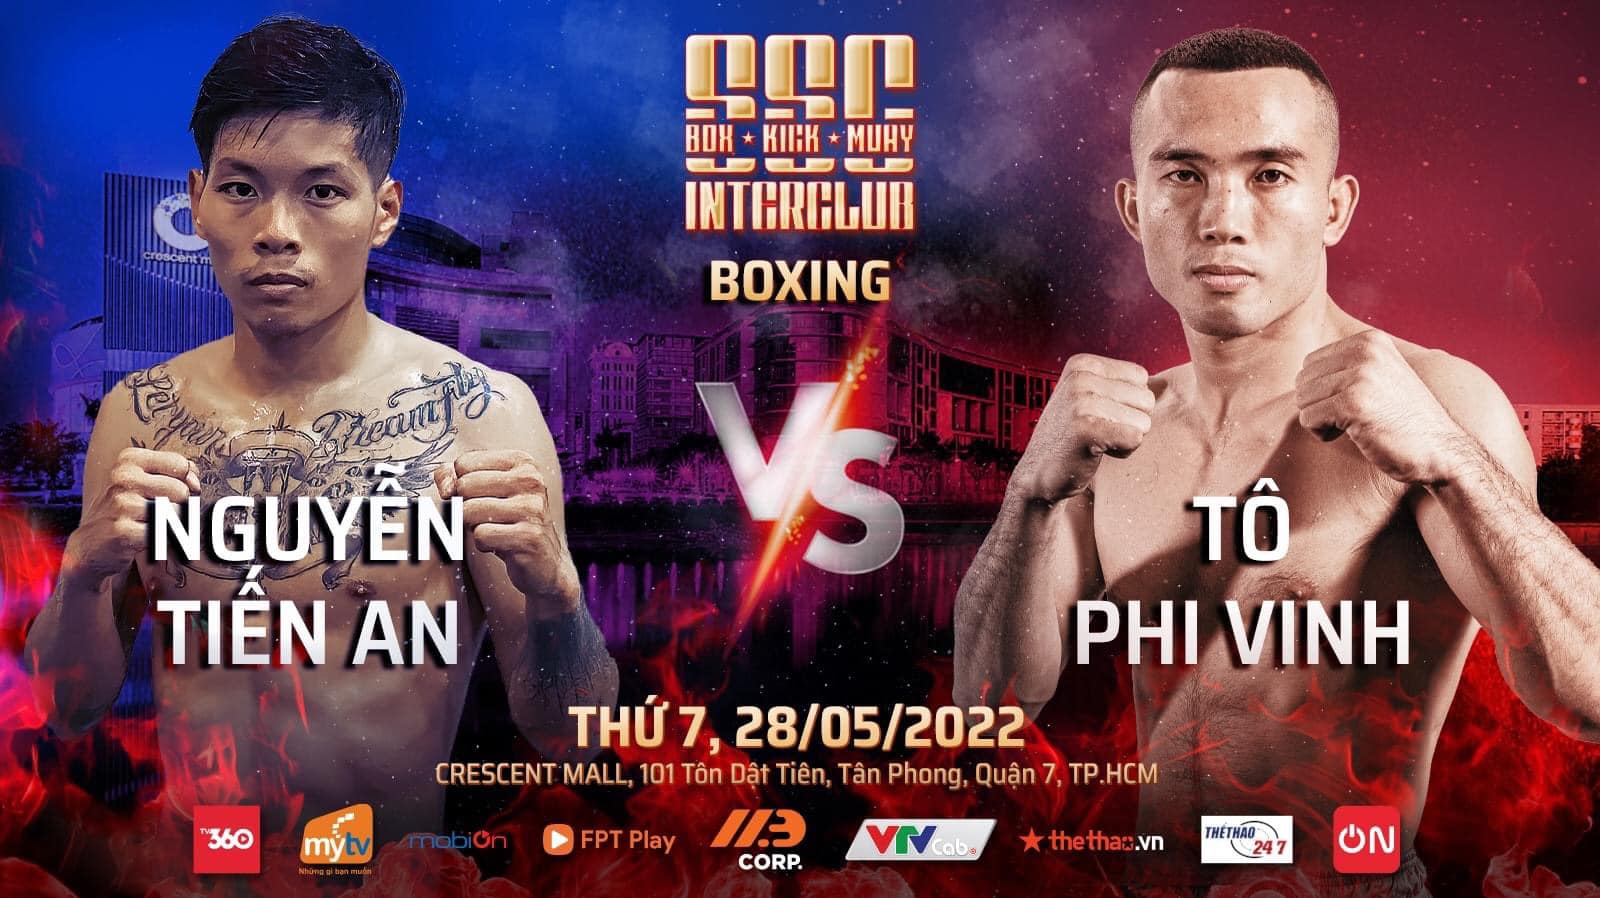 Sự kiện 3 môn võ Boxing, Kickboxing, Muay Thái tổ chức ở TPHCM ngày 28/5 - Ảnh 9